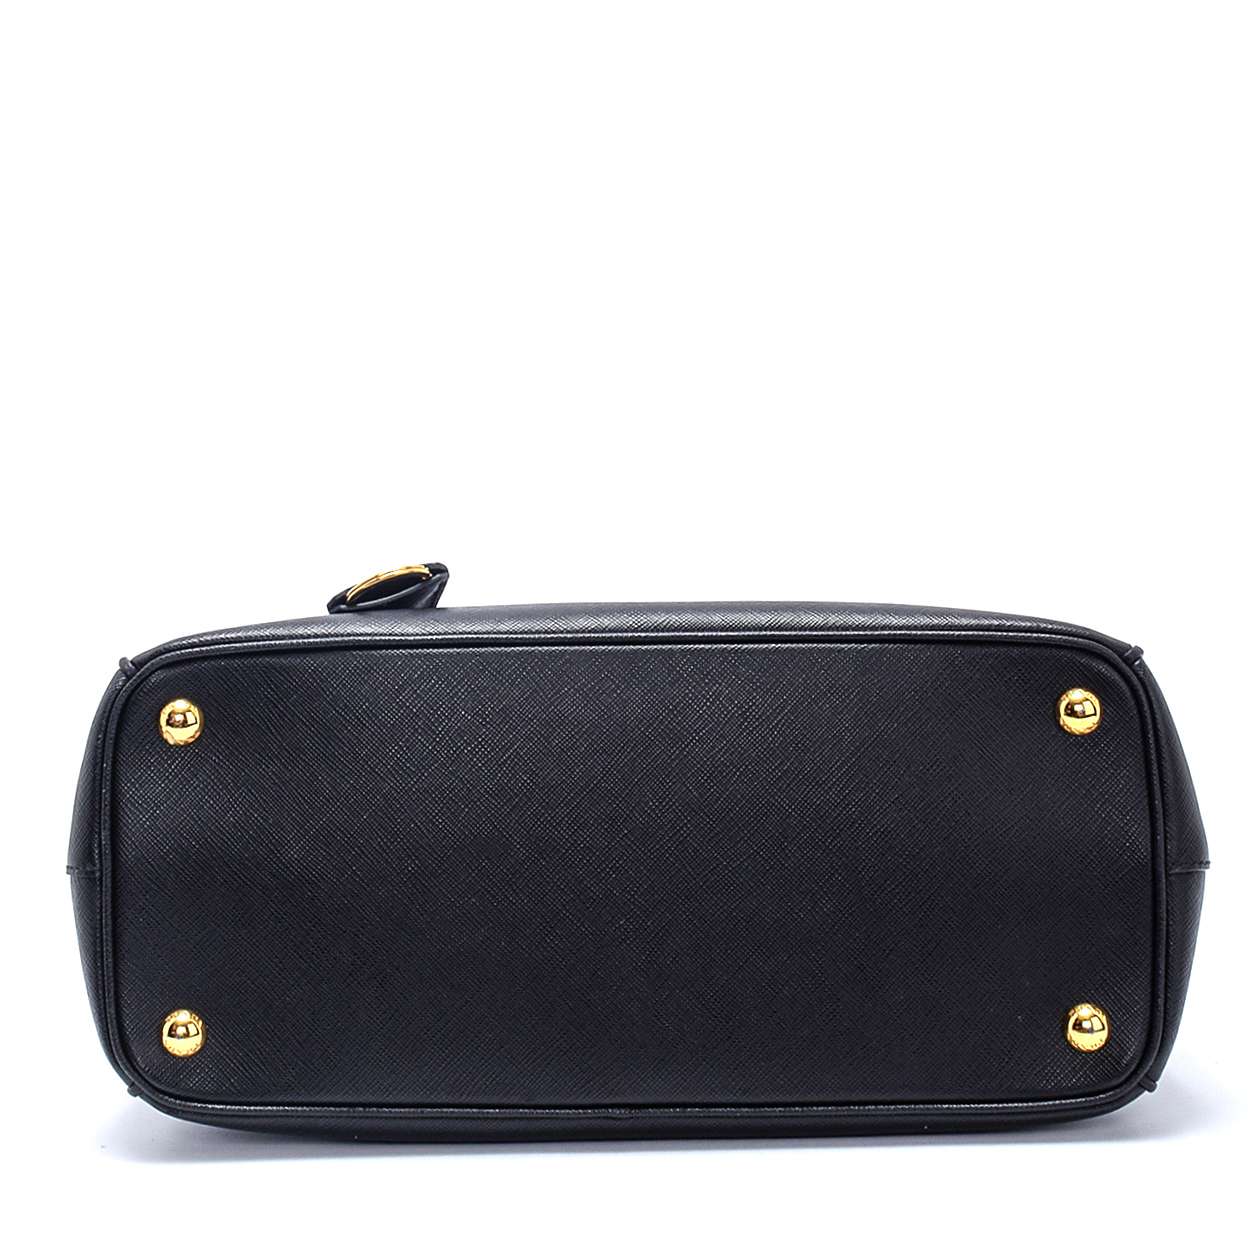 Prada - Black Saffiano Lux Leather Small Zip Tote Bag